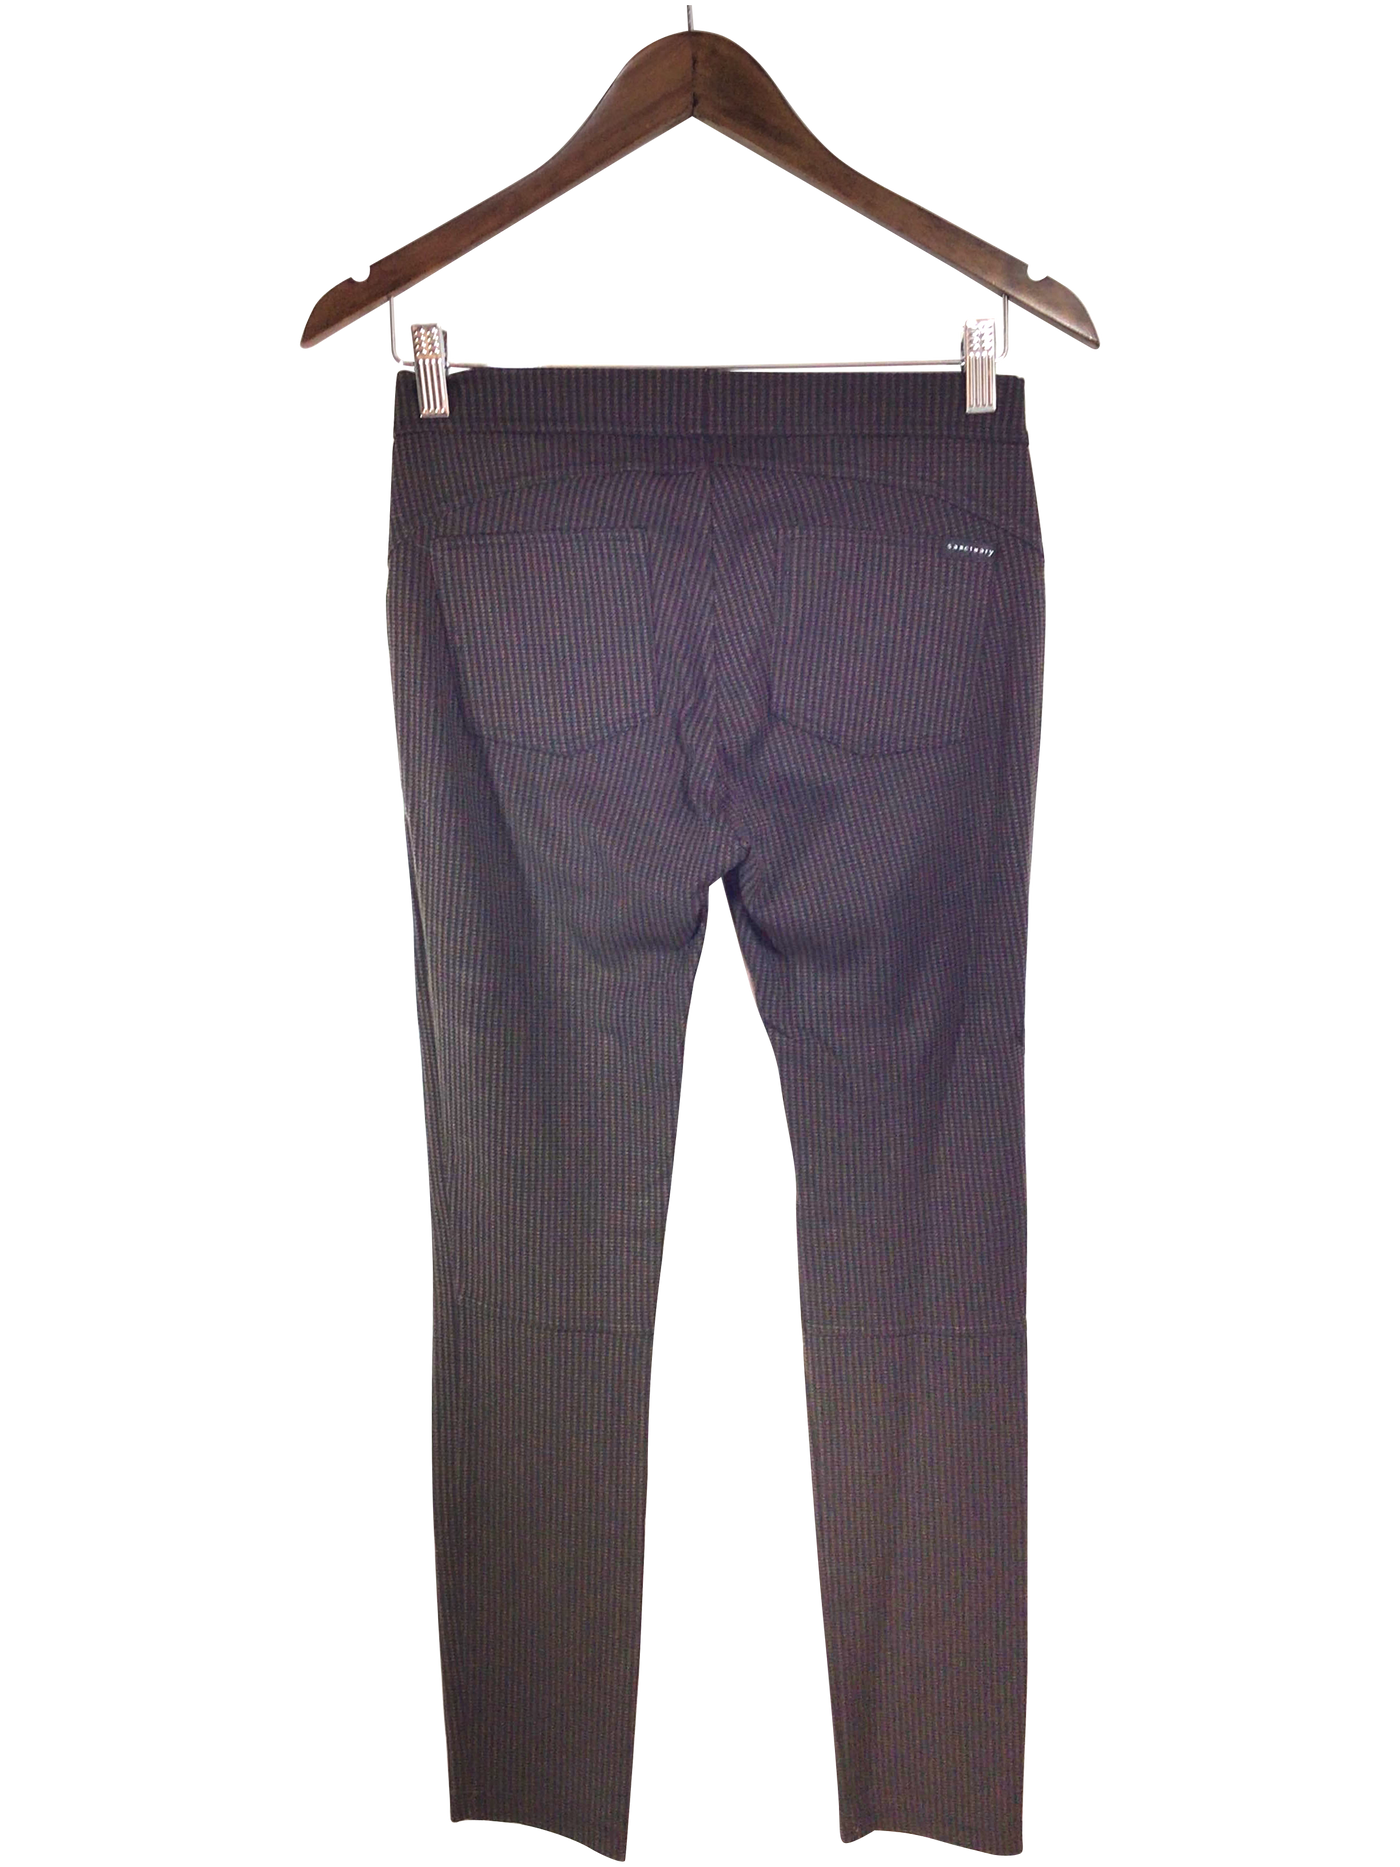 SANCTUARY Women Work Pants Regular fit in Brown - Size S | 20.14 $ KOOP